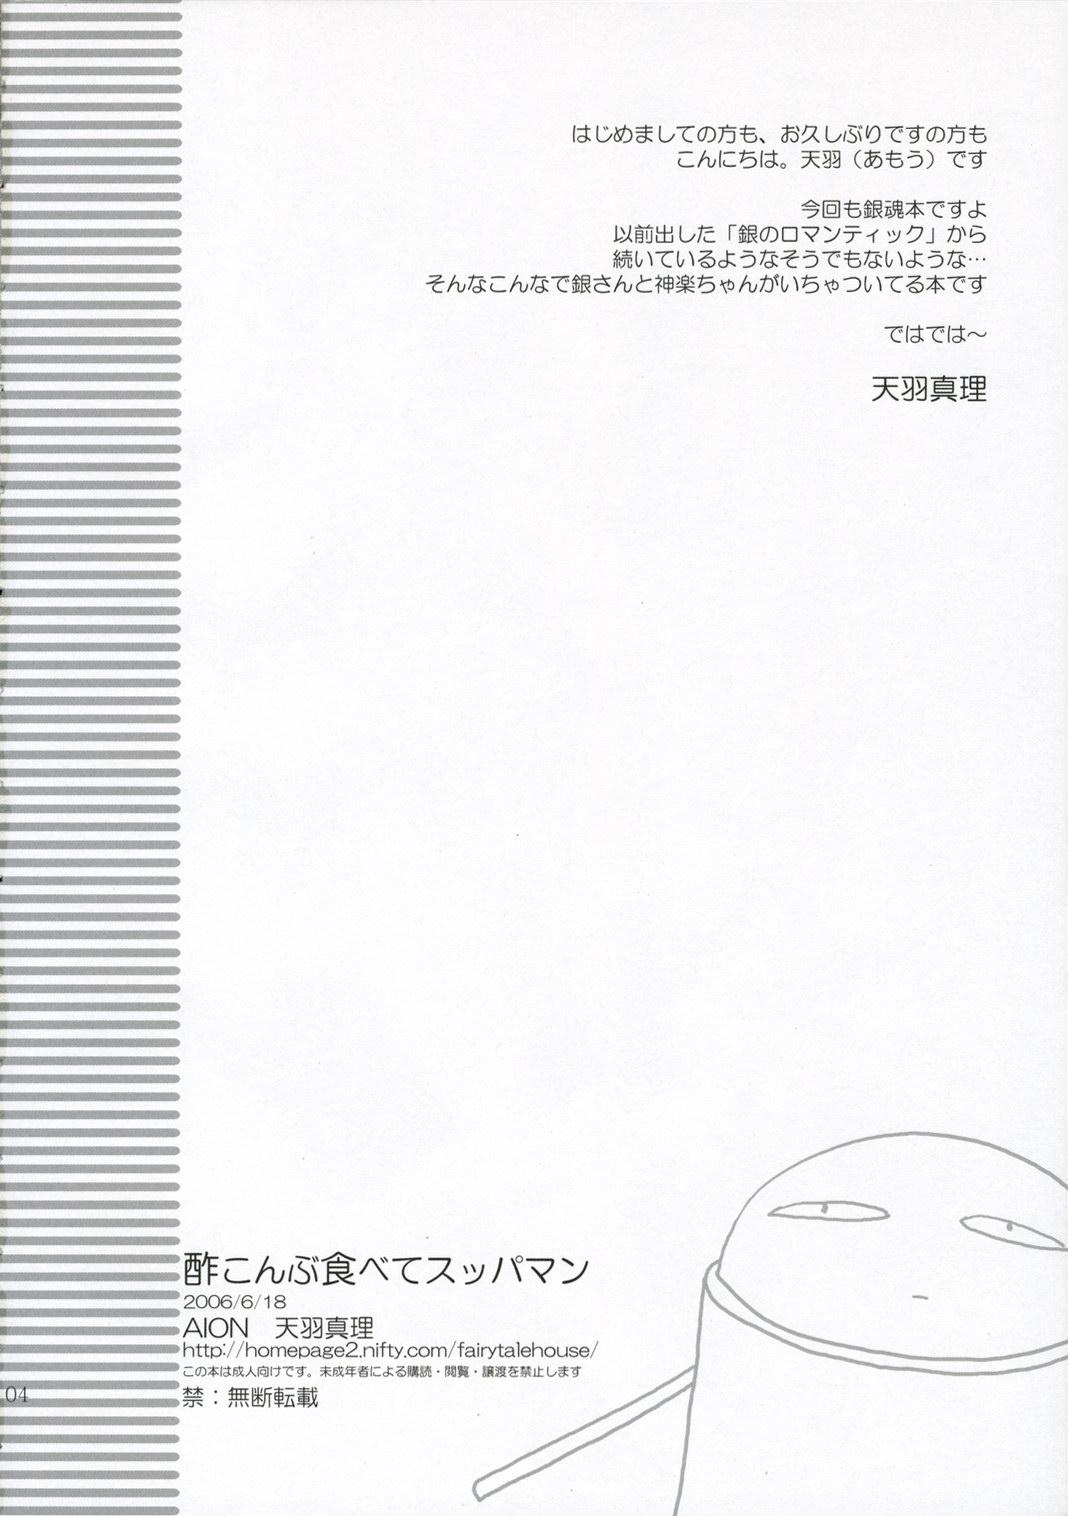 Jerking Sukonbu Tabete Suppaman - Gintama Home - Page 3